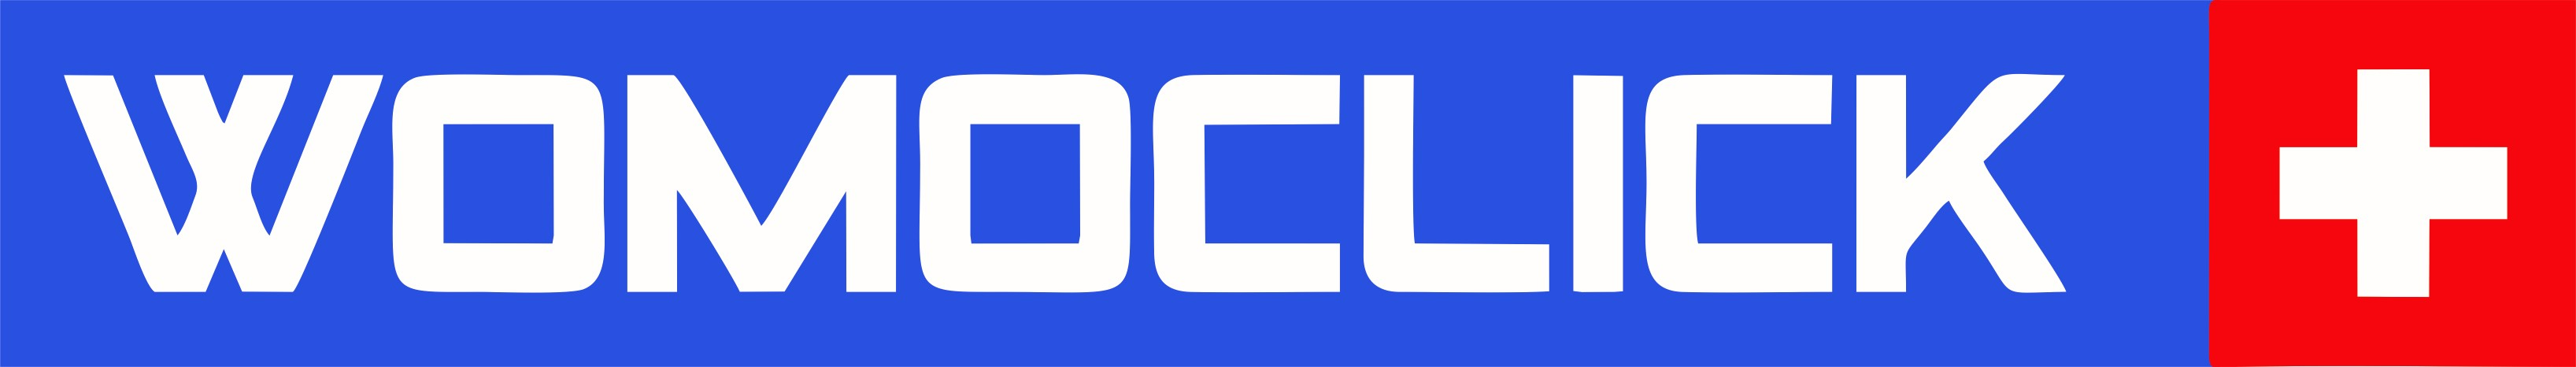 Womoclick - Logo